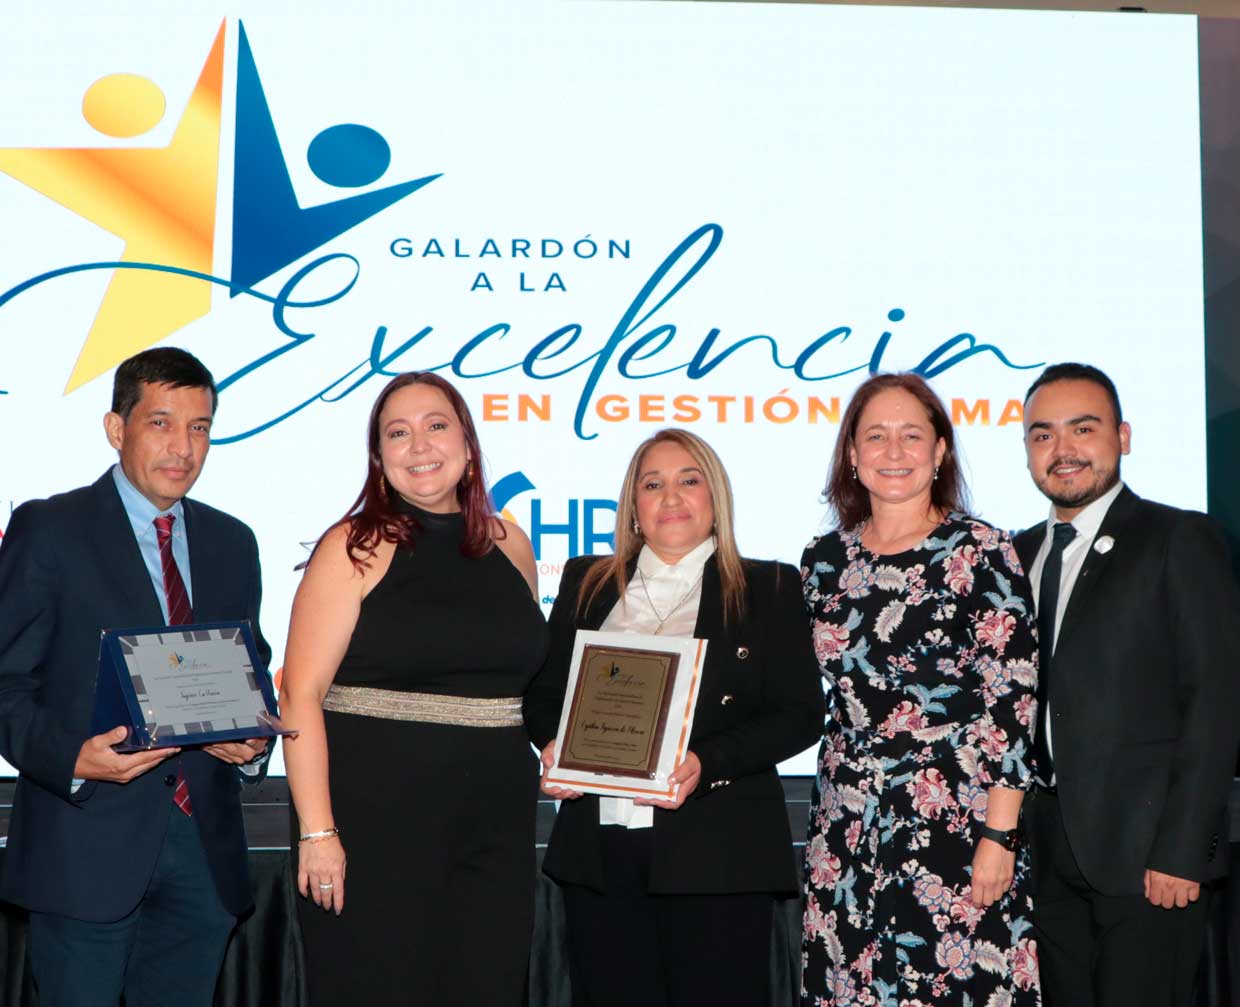 Empresas y profesionales guatemaltecos son reconocidos con el galardón a la excelencia en gestión humana